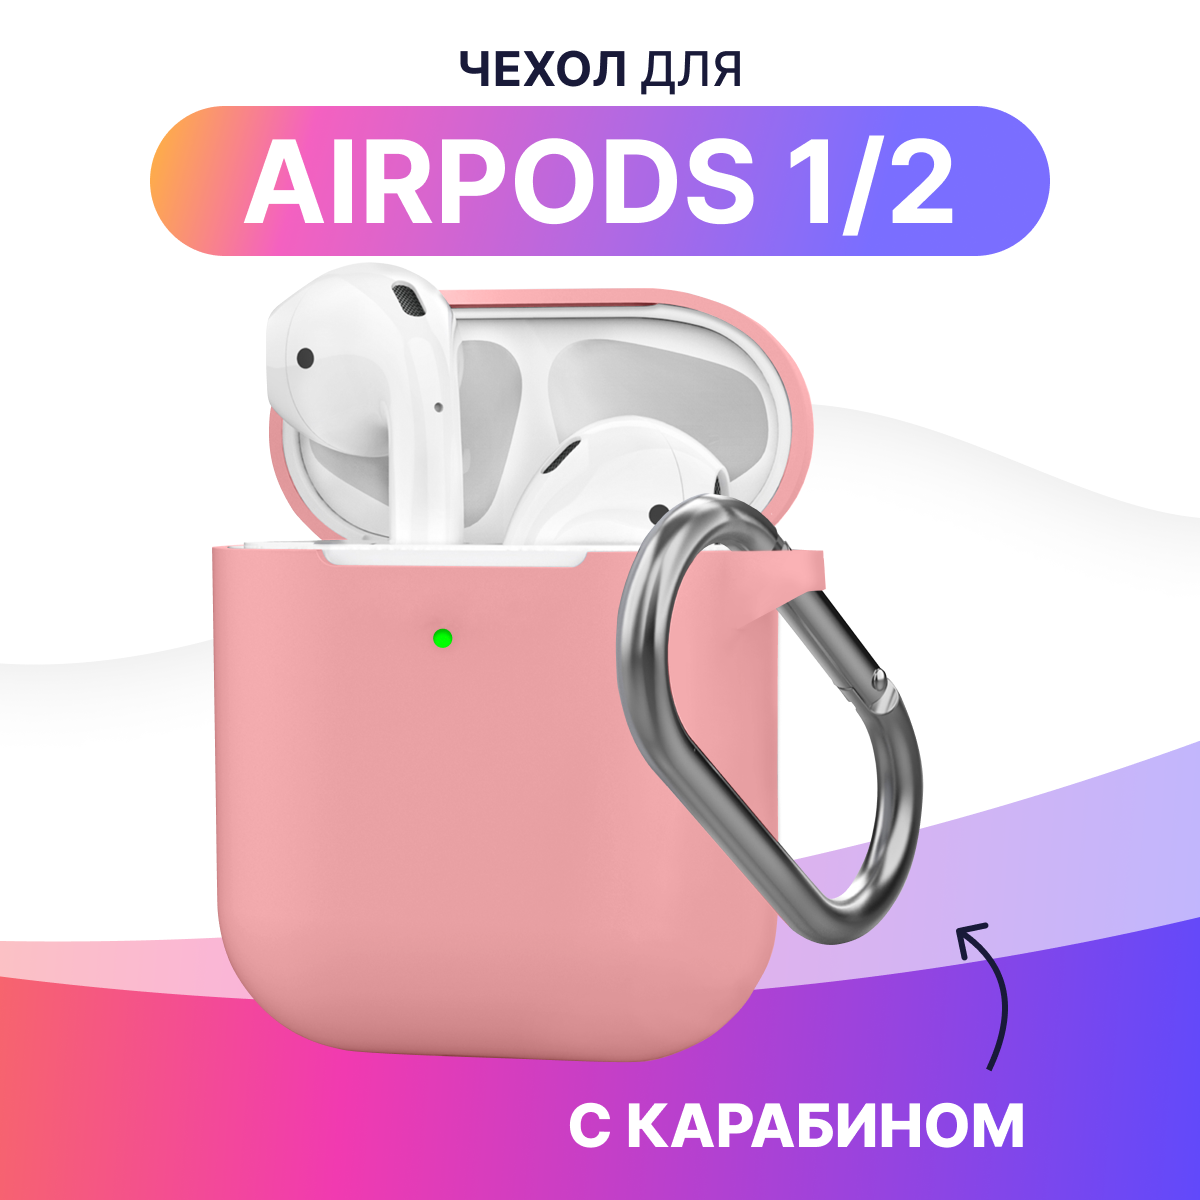 Силиконовый чехол для Apple AirPods 1 и AirPods 2 с карабином / Кейс для Эпл Аирподс 1 и Аирподс 2 с держателем (Розовый)